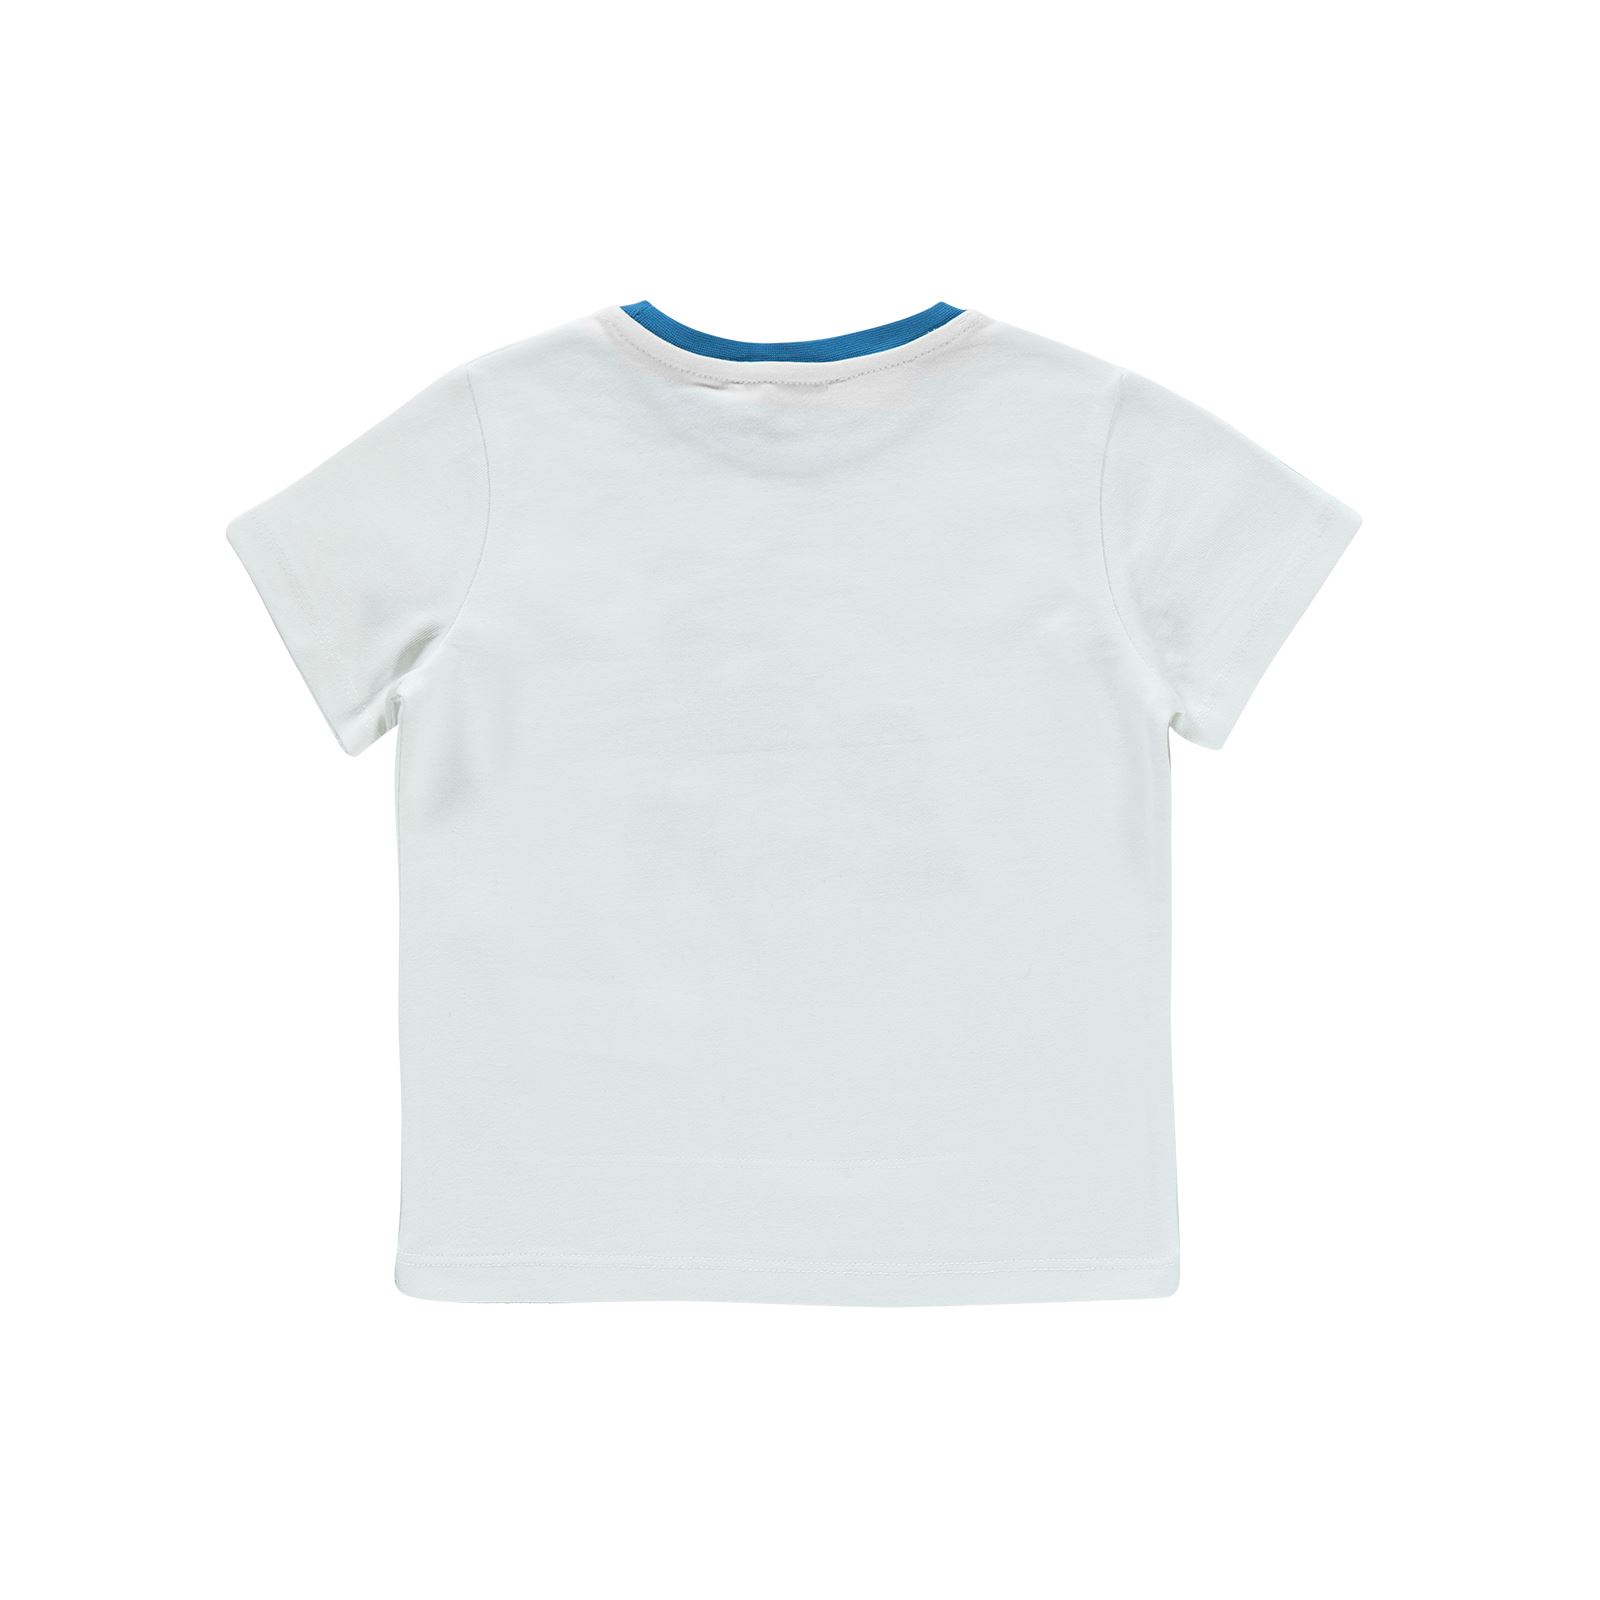 Small Socıety Erkek Çocuk Tişört 2-7 Yaş Beyaz